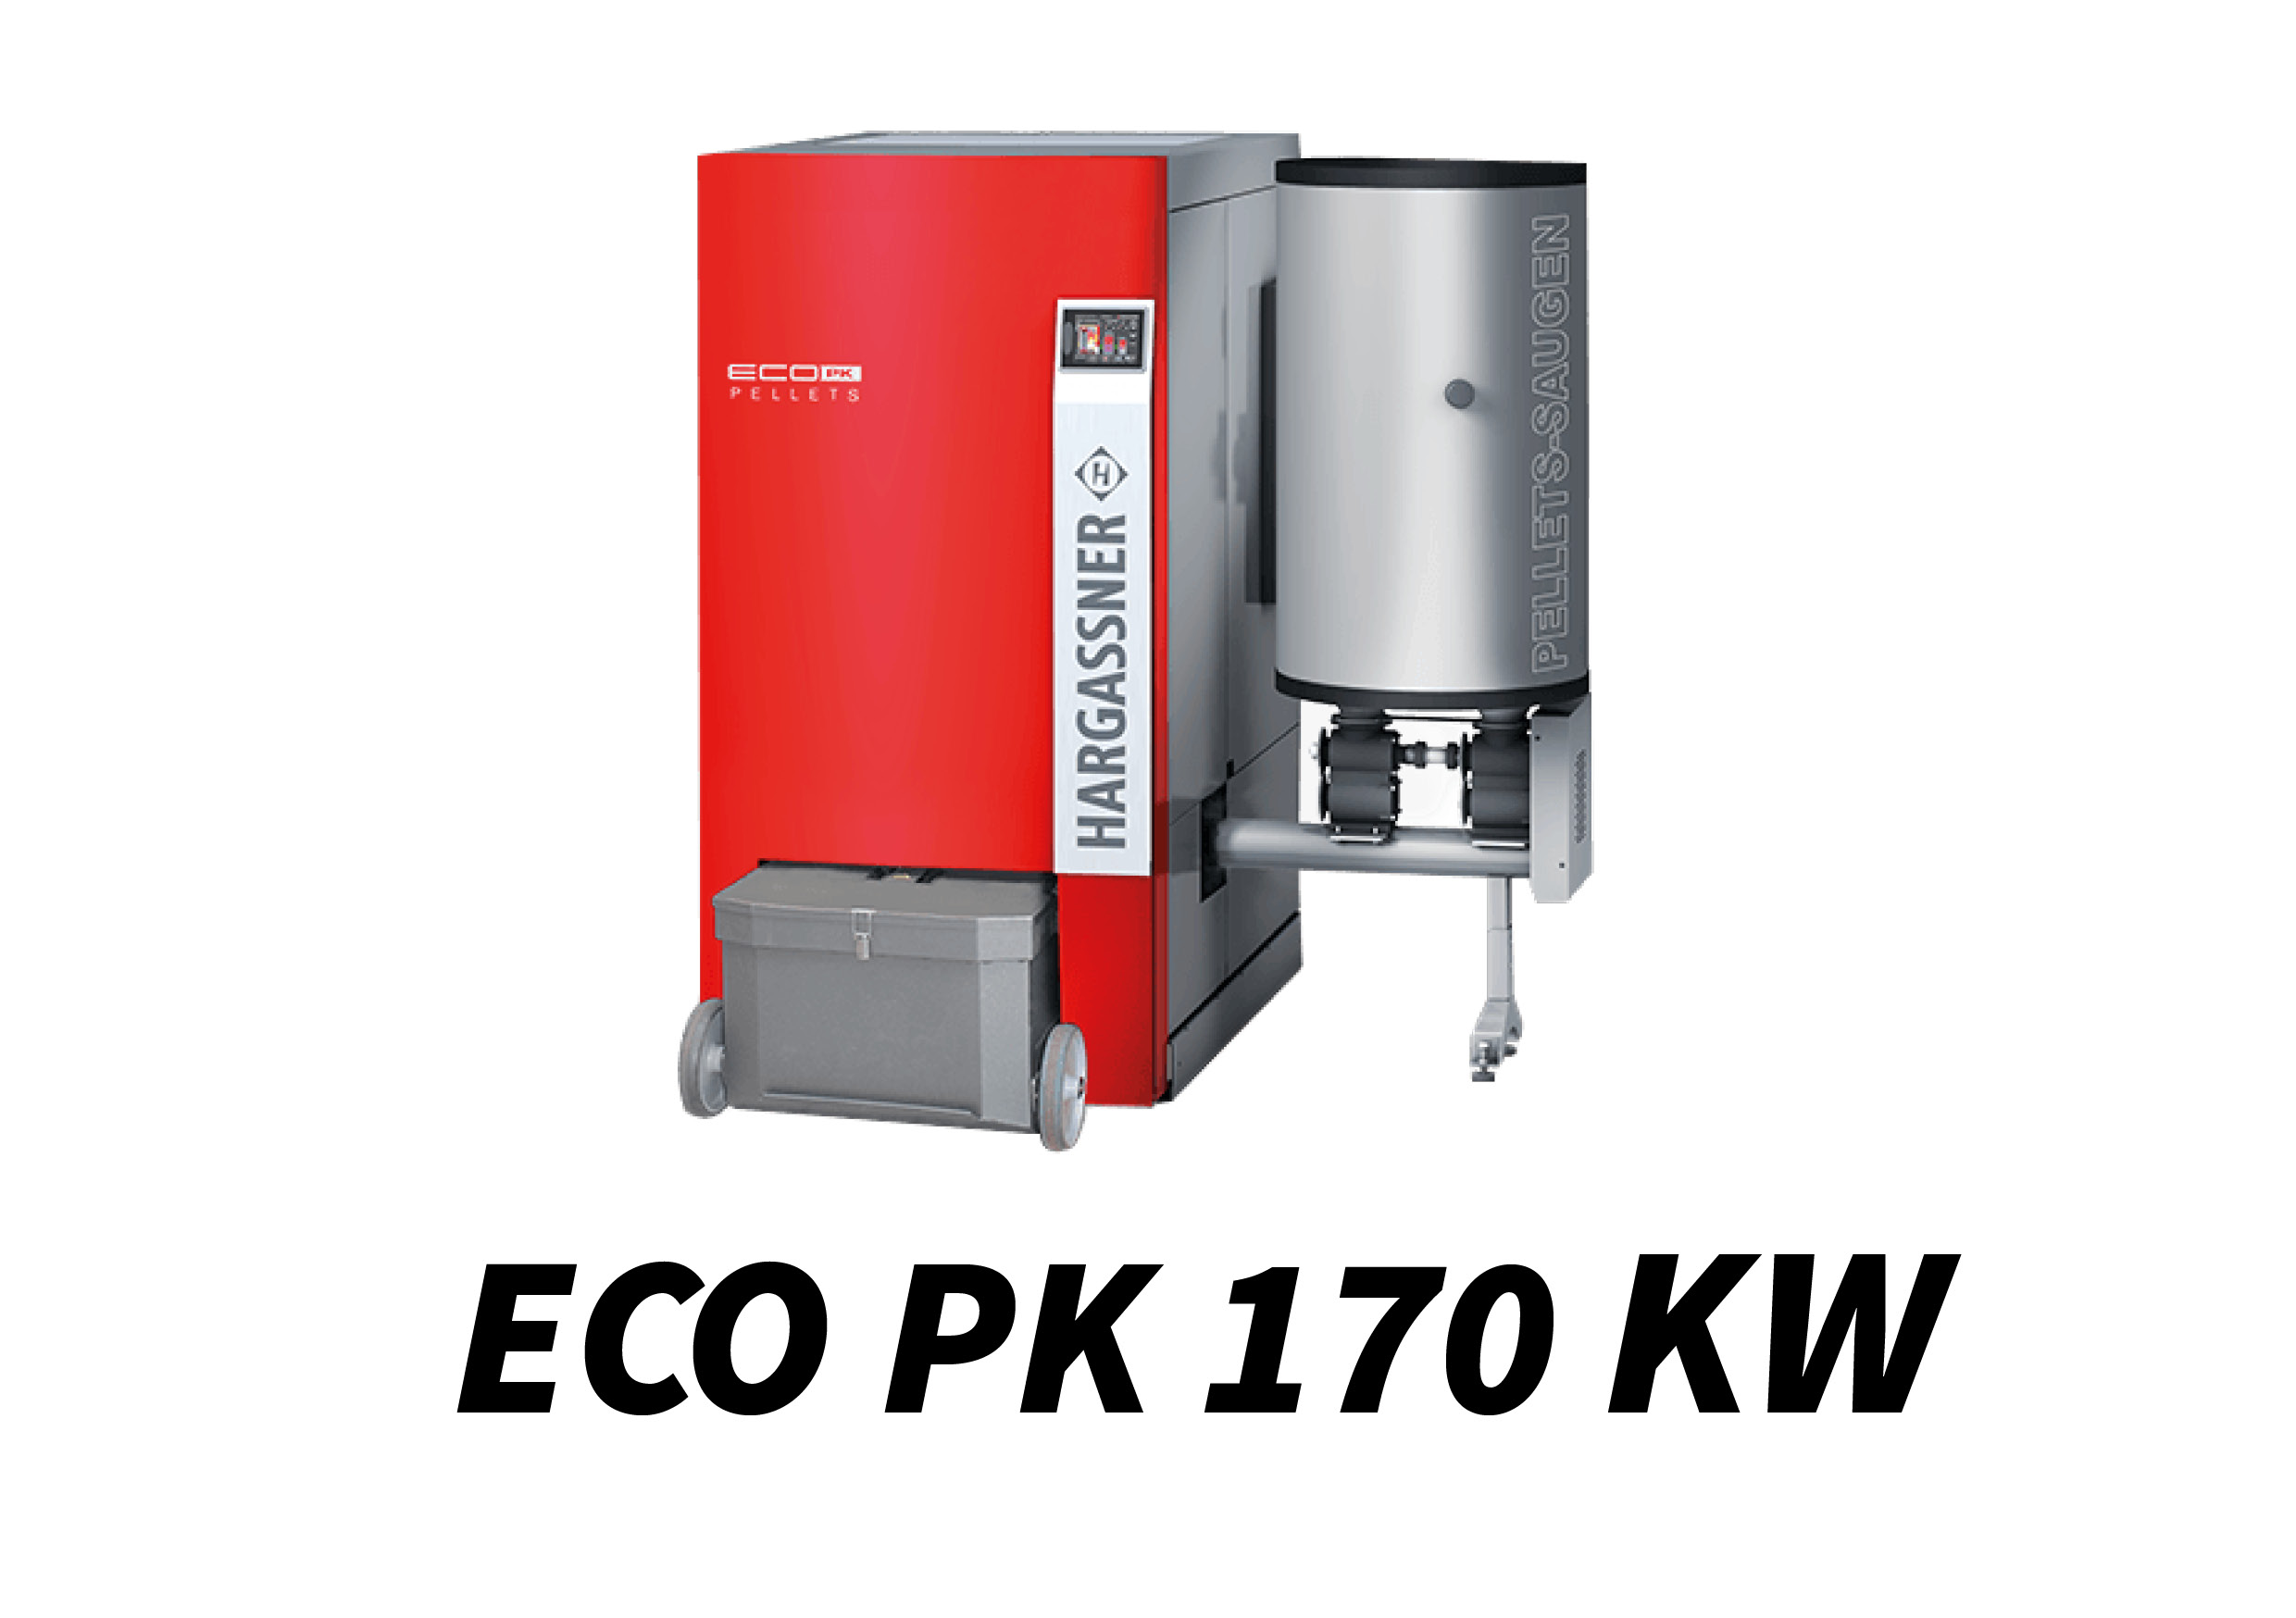 ECO PK 170 kW